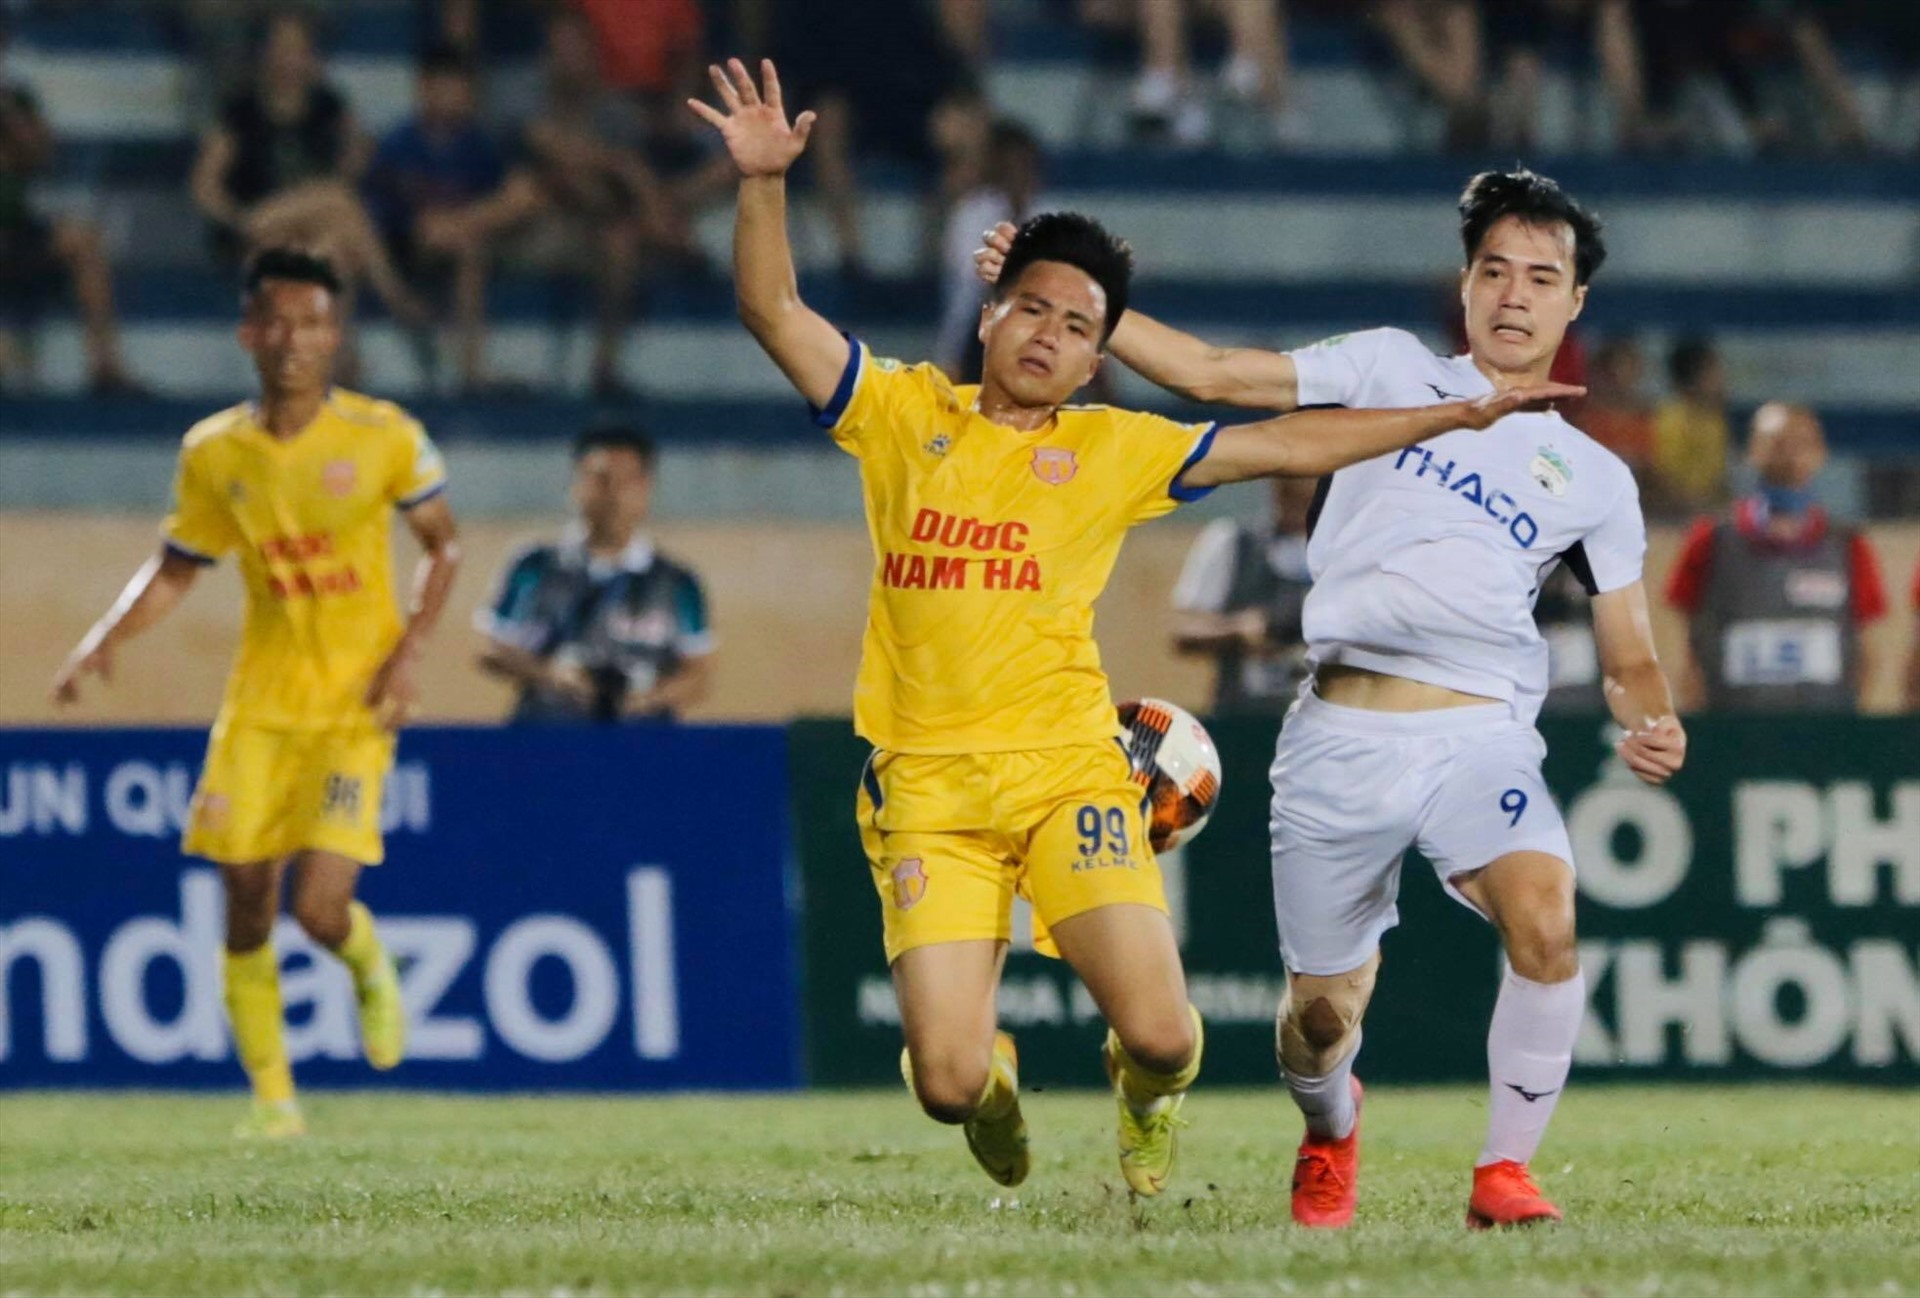 Trận đấu diễn ra với chất lượng chuyên môn cao, hứa hẹn sự trở lại tích cực của bóng đá Việt Nam. Ảnh: Đăng Huỳnh